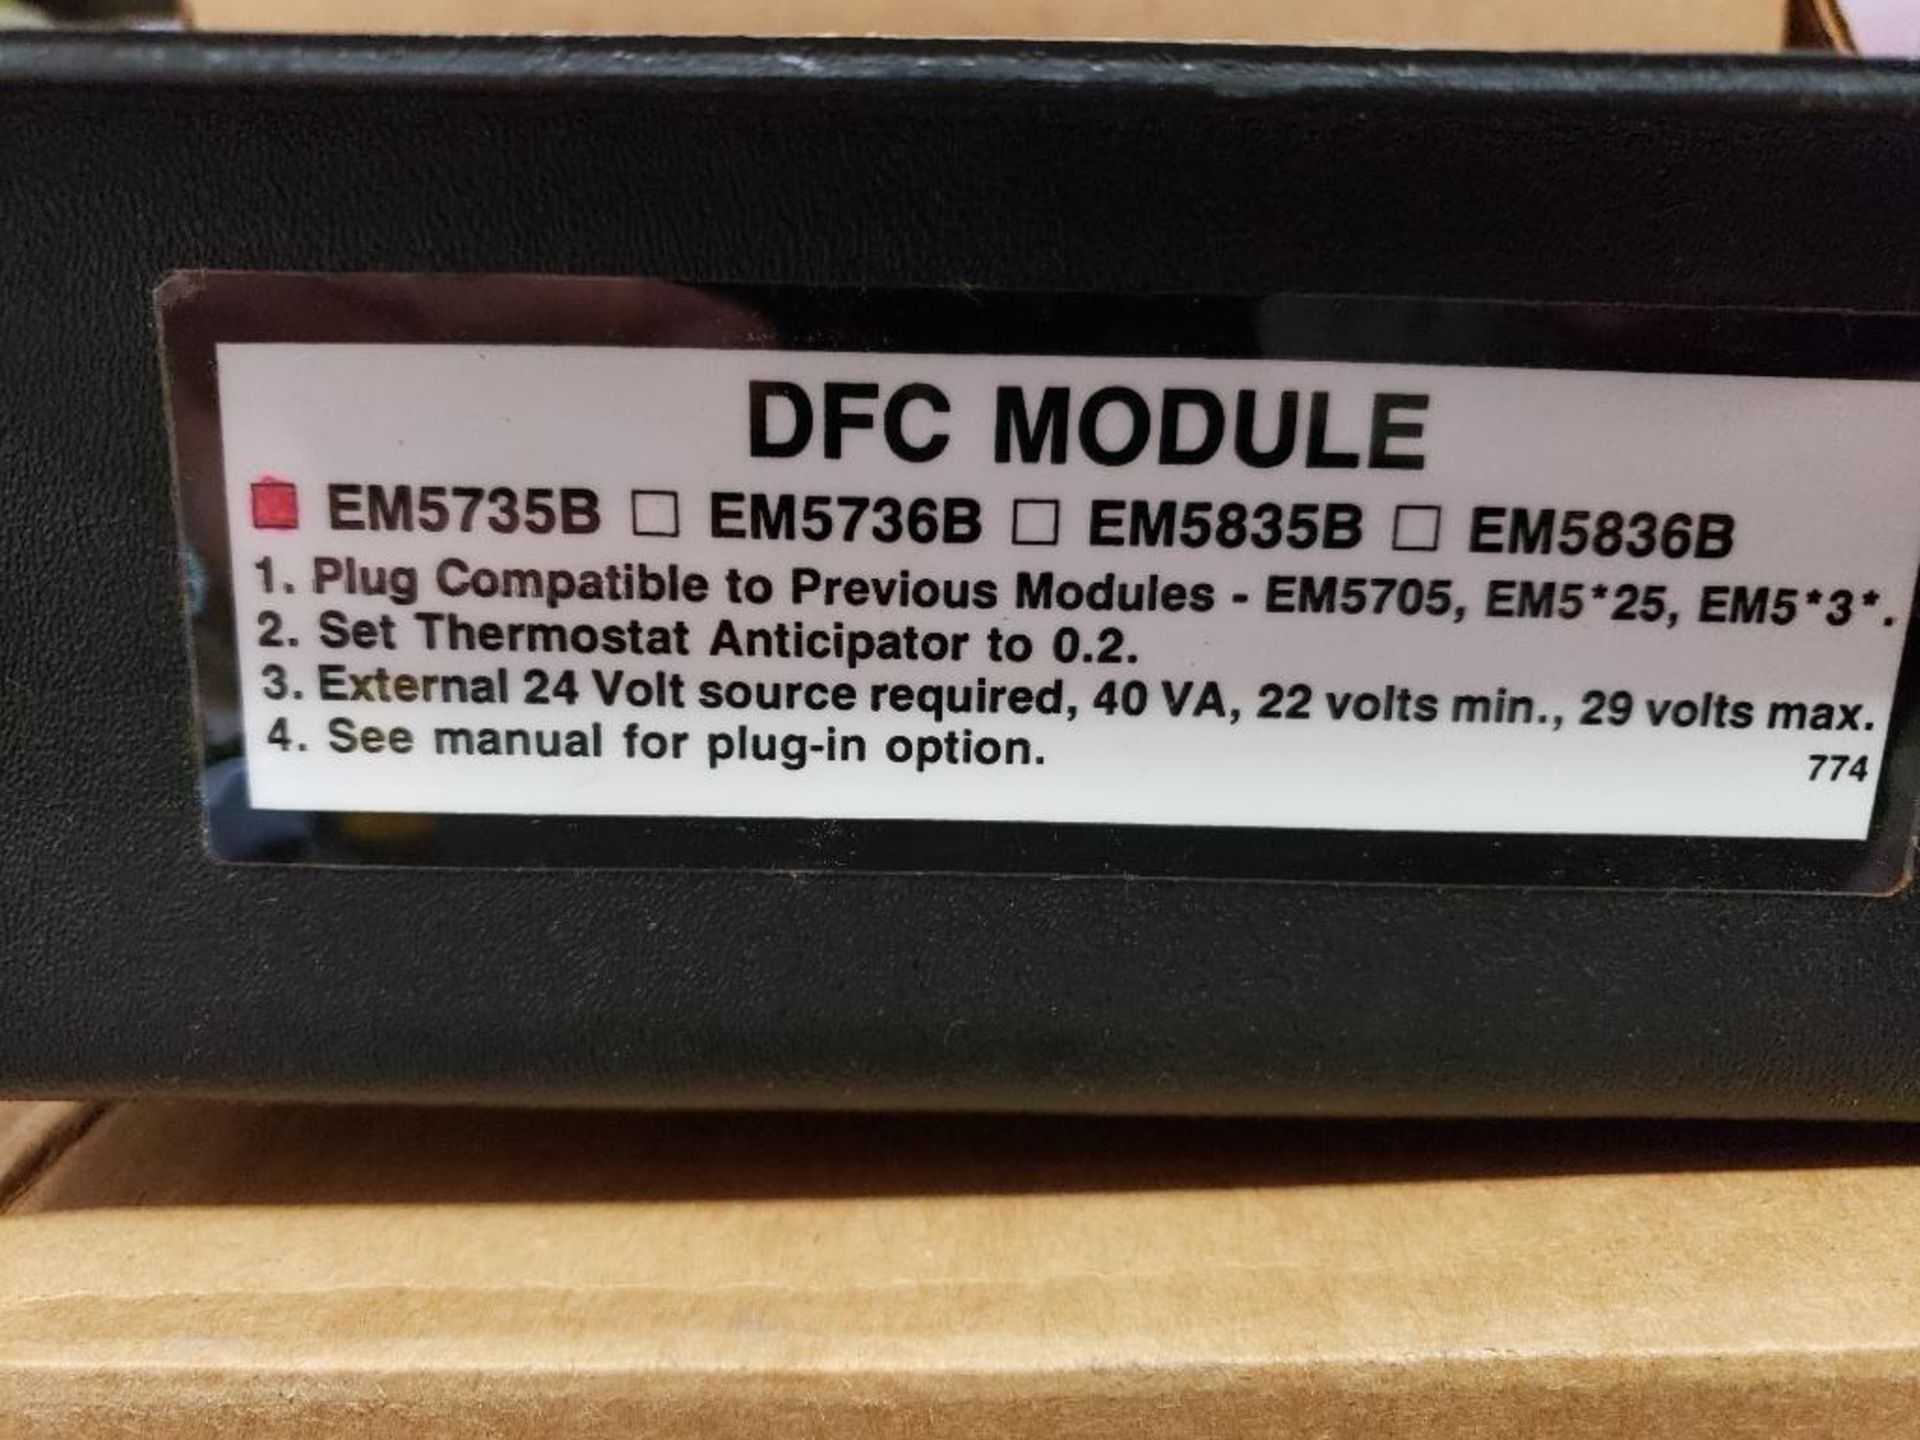 Qty 7 - DFC Module EM5735B. New in box. - Image 4 of 6